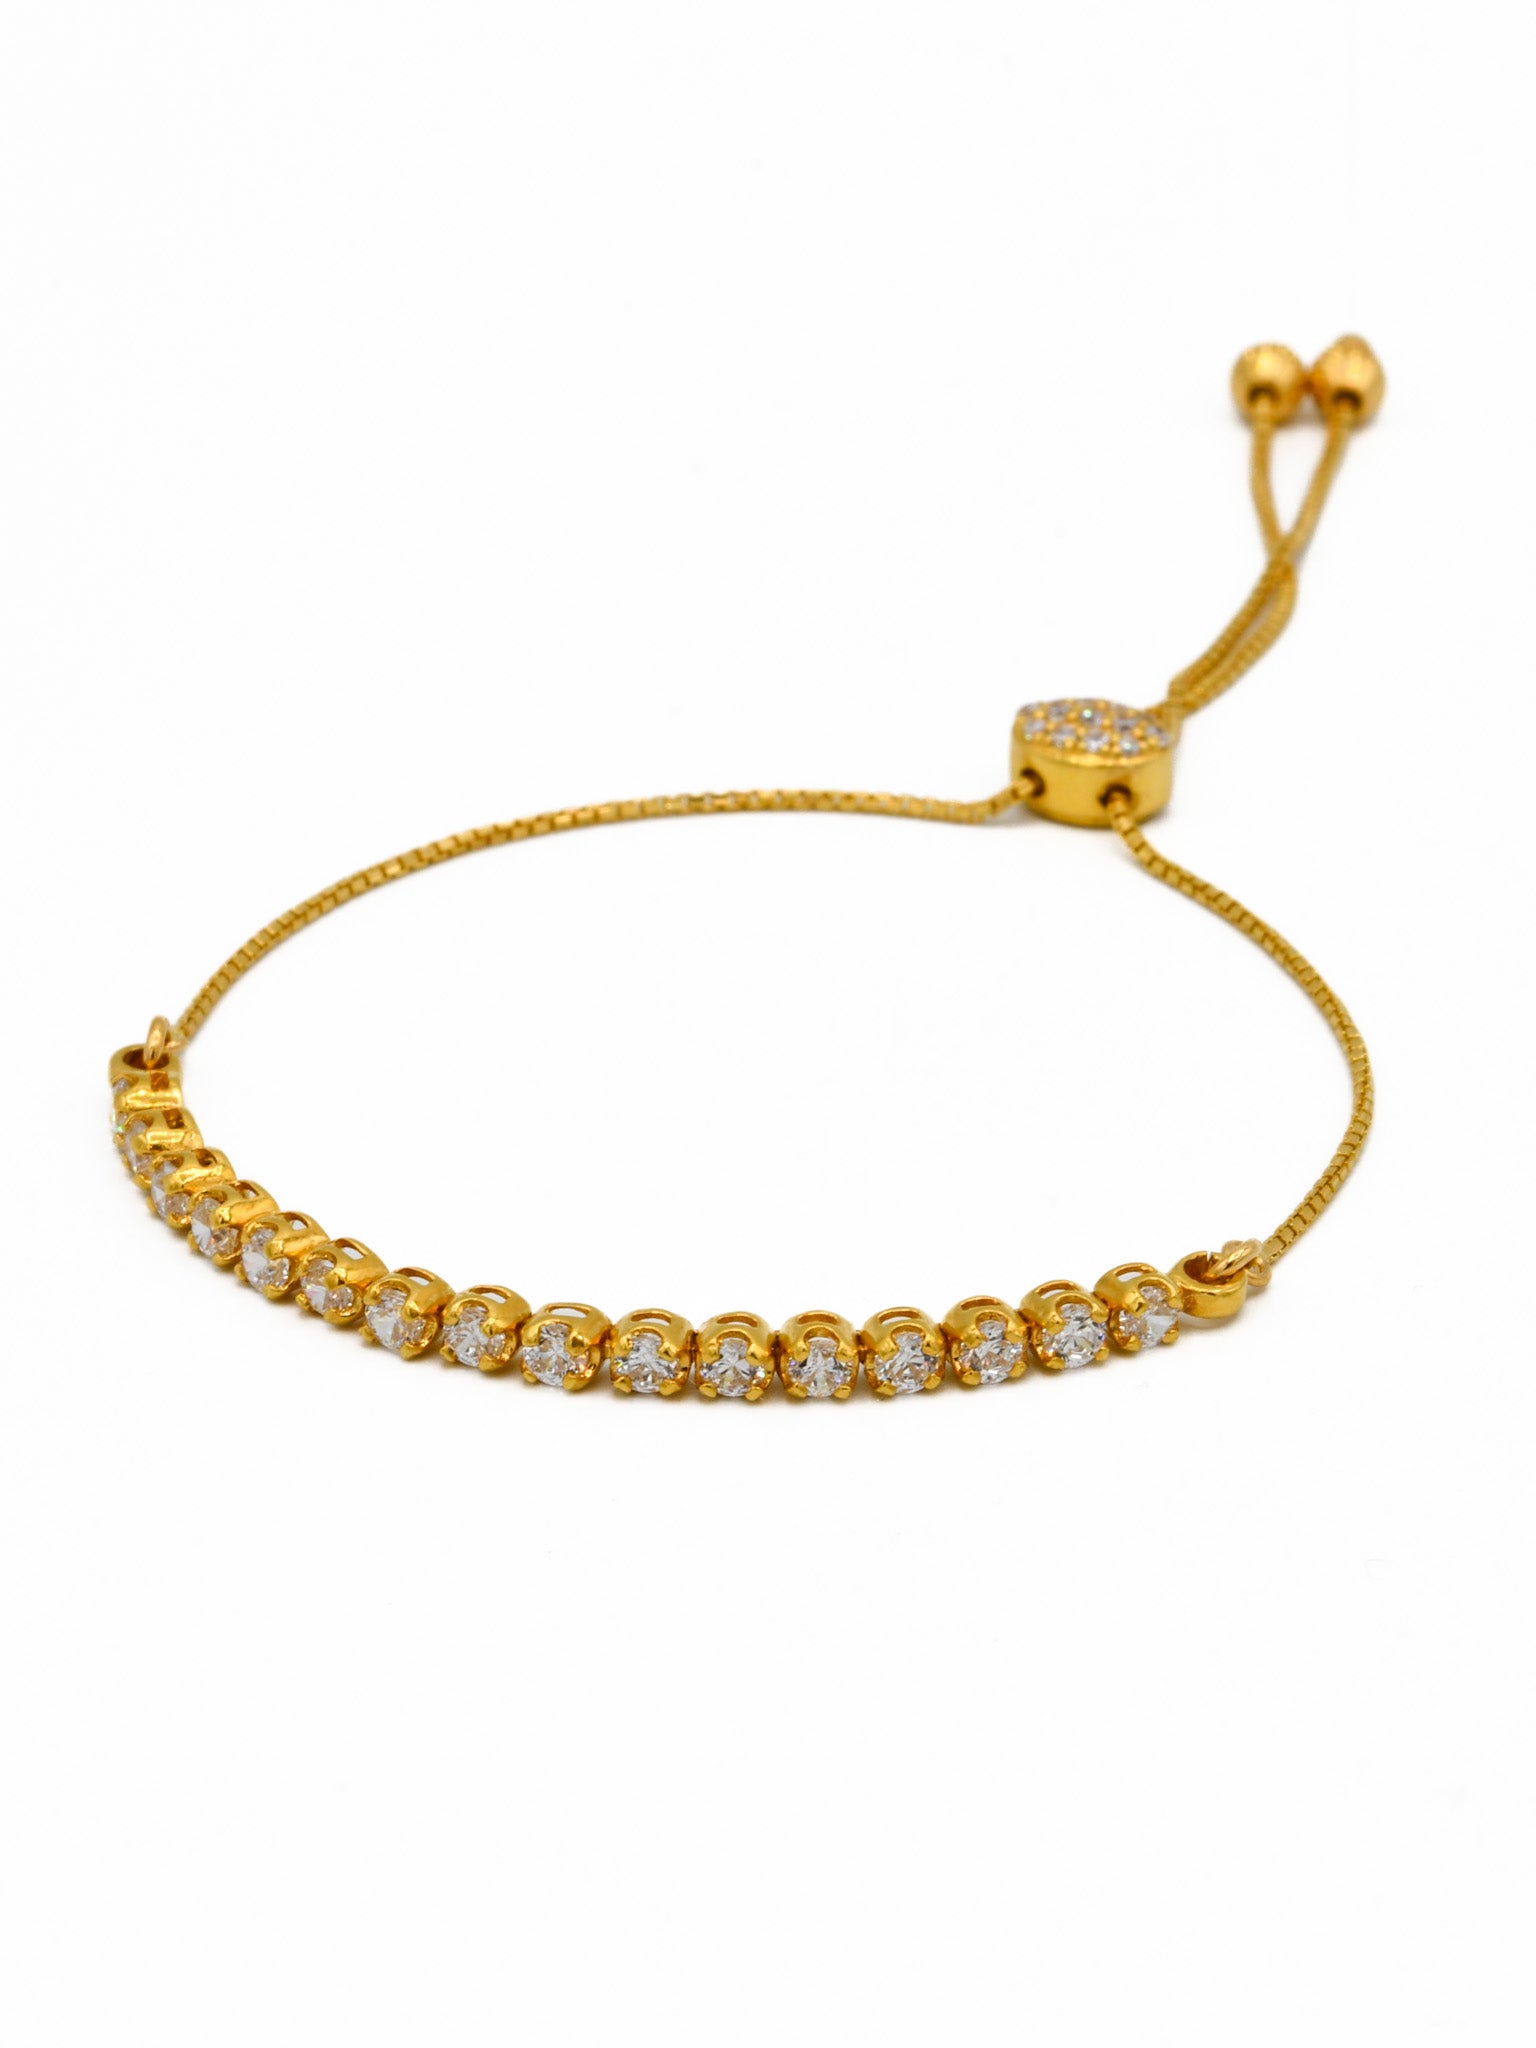 22ct Gold CZ Adjustable Ladies Bracelet - Roop Darshan